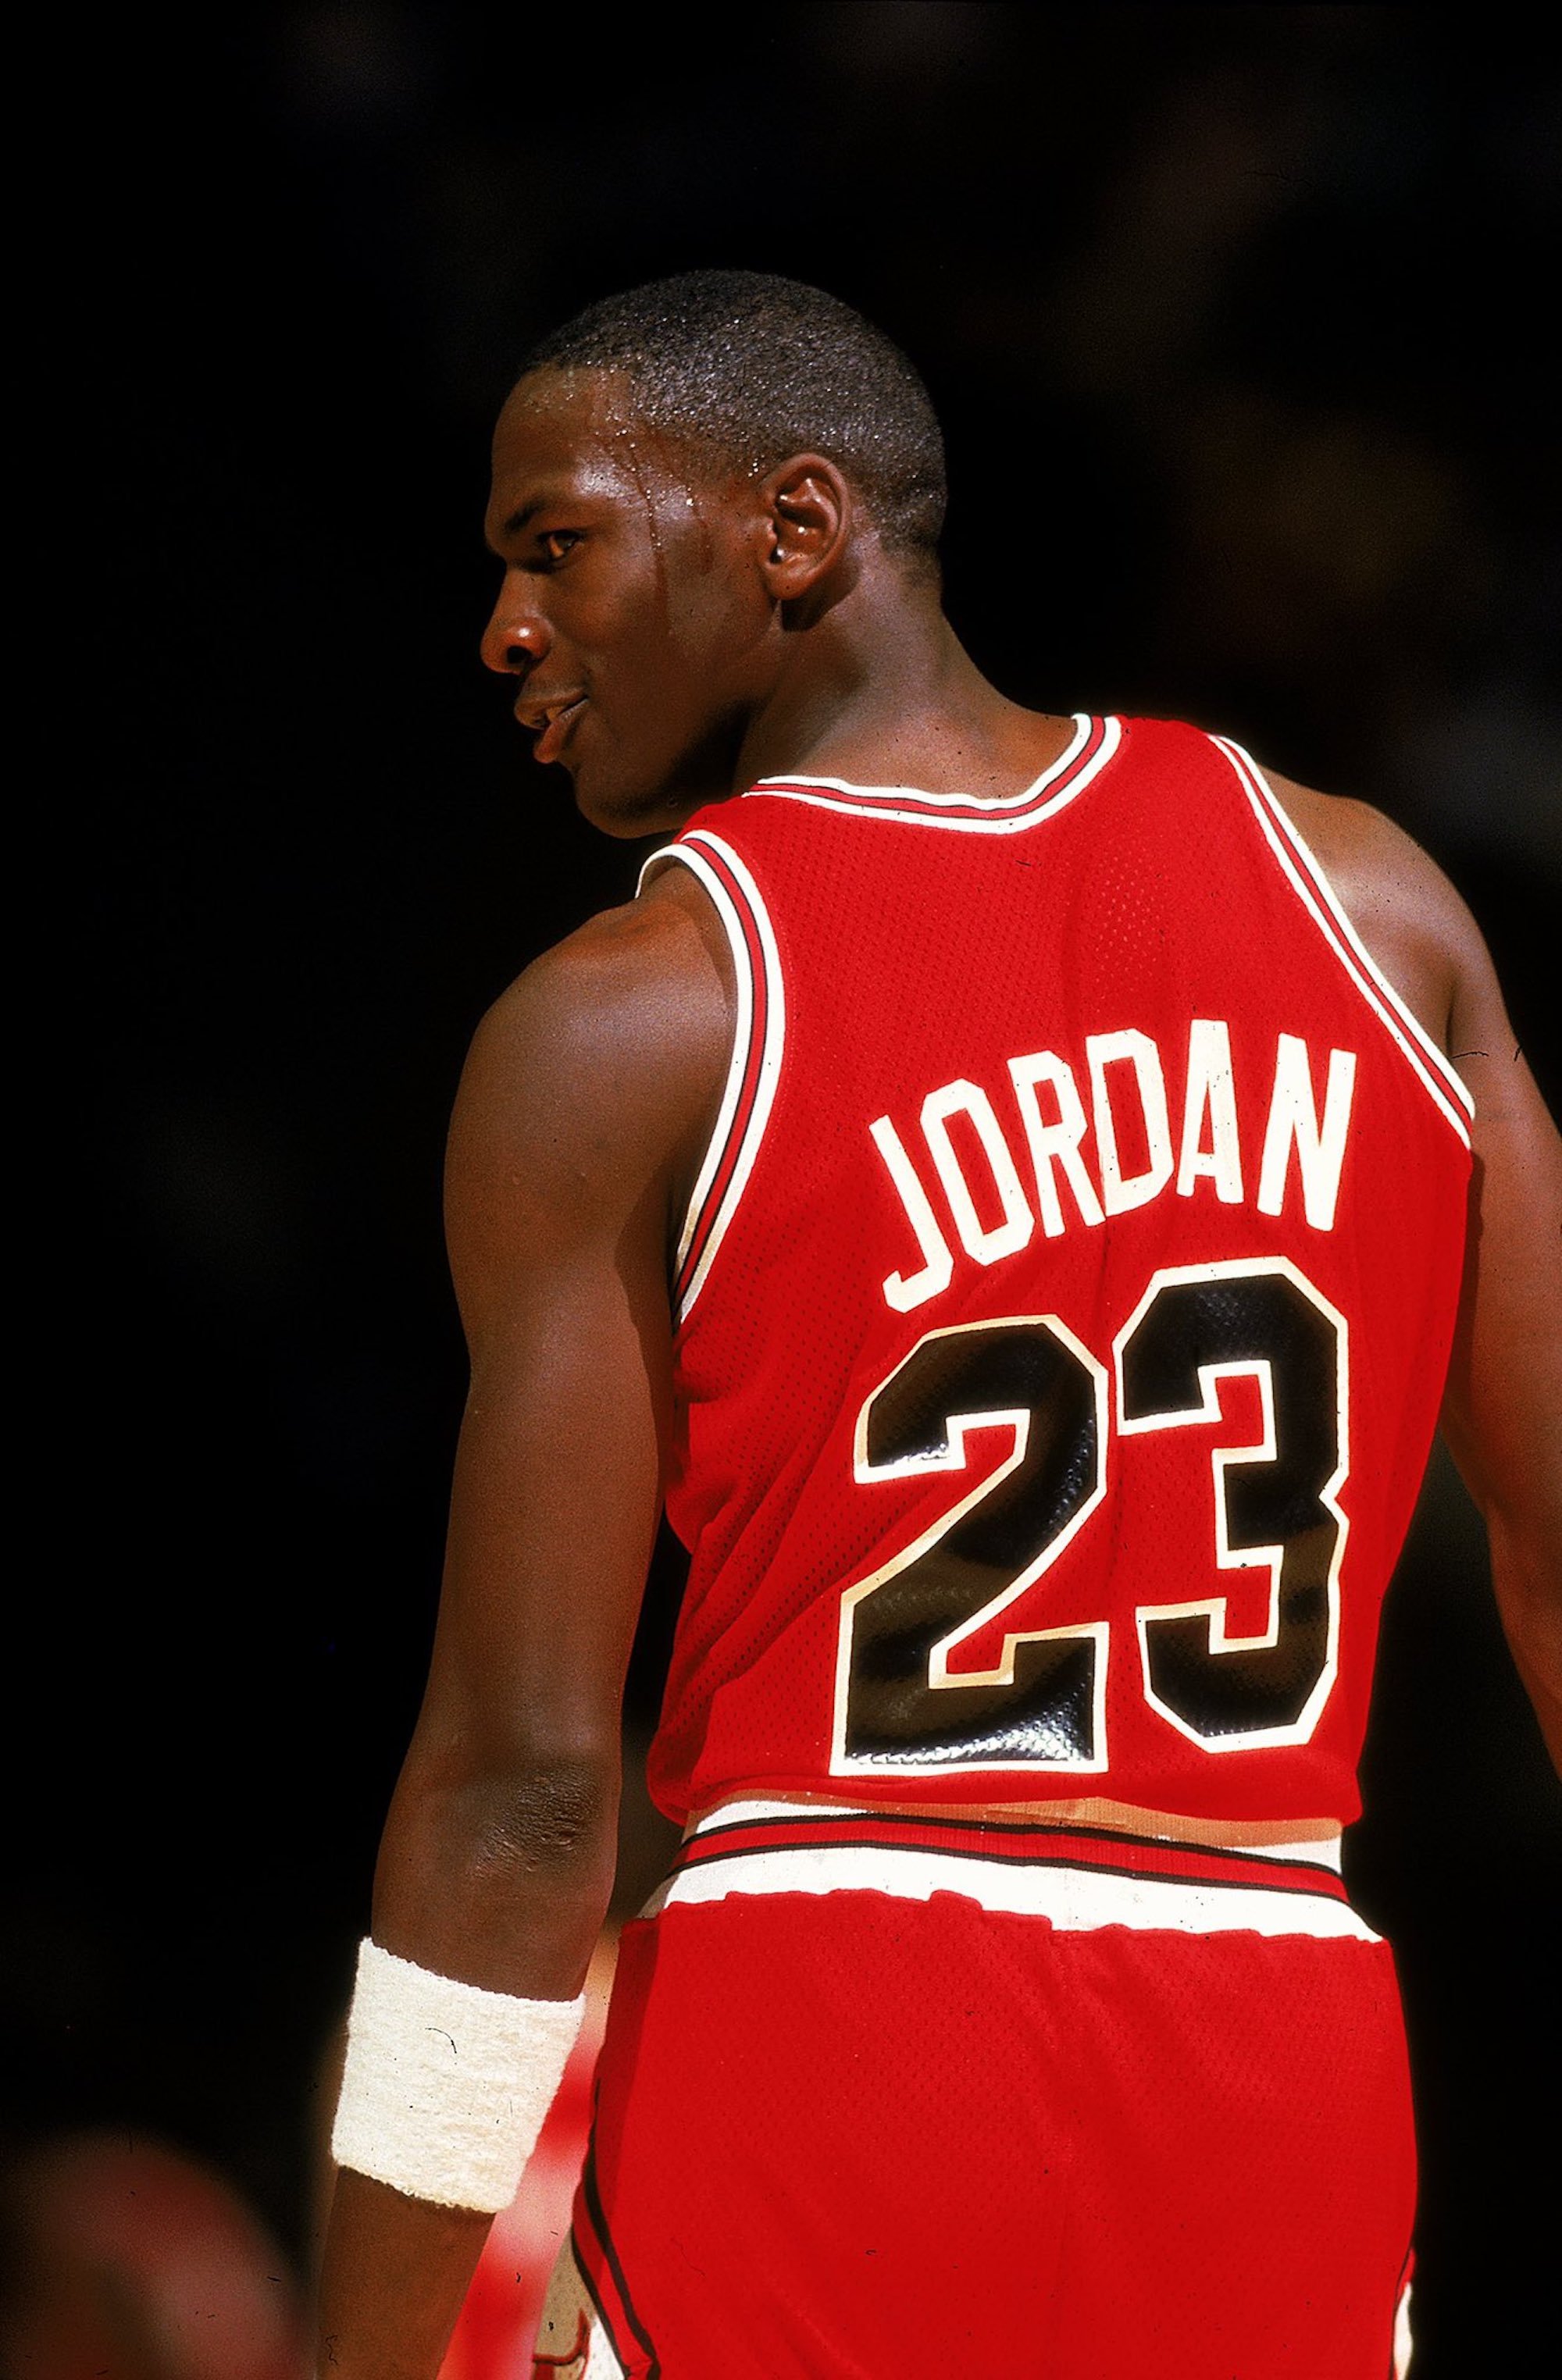 Todas las falsedades del documental de Michael Jordan, según el periodista Smith